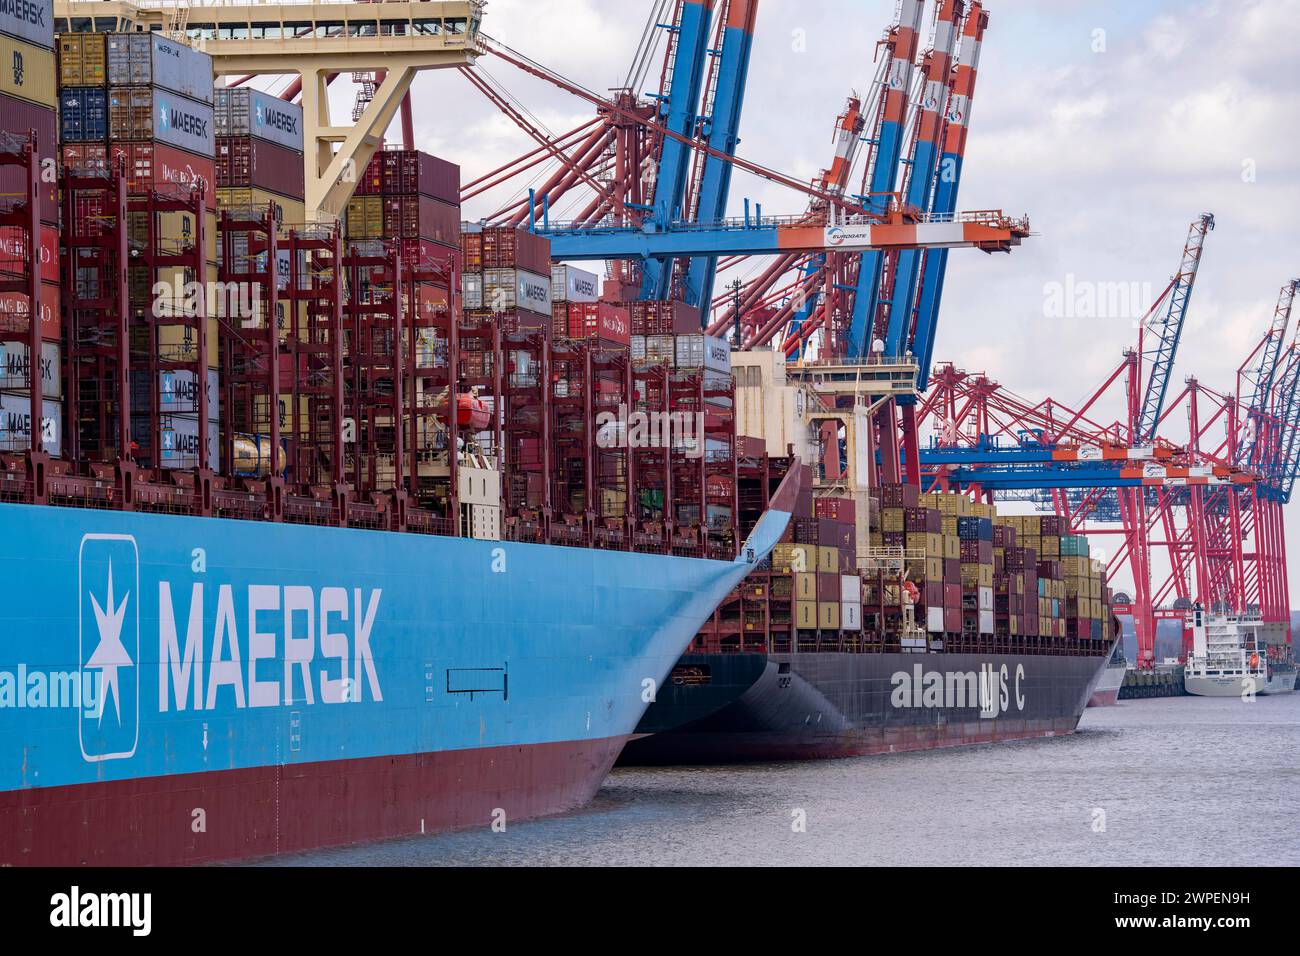 Magleby Maersk Container Frachter im EUROGATE Container Terminal, Waltershofer Hafen, gehört zu den größten Containerschiffen der Welt , Kapazität von 18,270 TEU, Triple E Klasse, MSC Containerfrachter, Hamburg, Deutschland Containerschiff *** Magleby Maersk container freighter at EUROGATE Container Terminal, Waltershofer Hafen, is one of the largest container ships in the world, capacity of 18,270 TEU, Triple E class, MSC container freighter, Hamburg, Germany Container ship Stock Photo